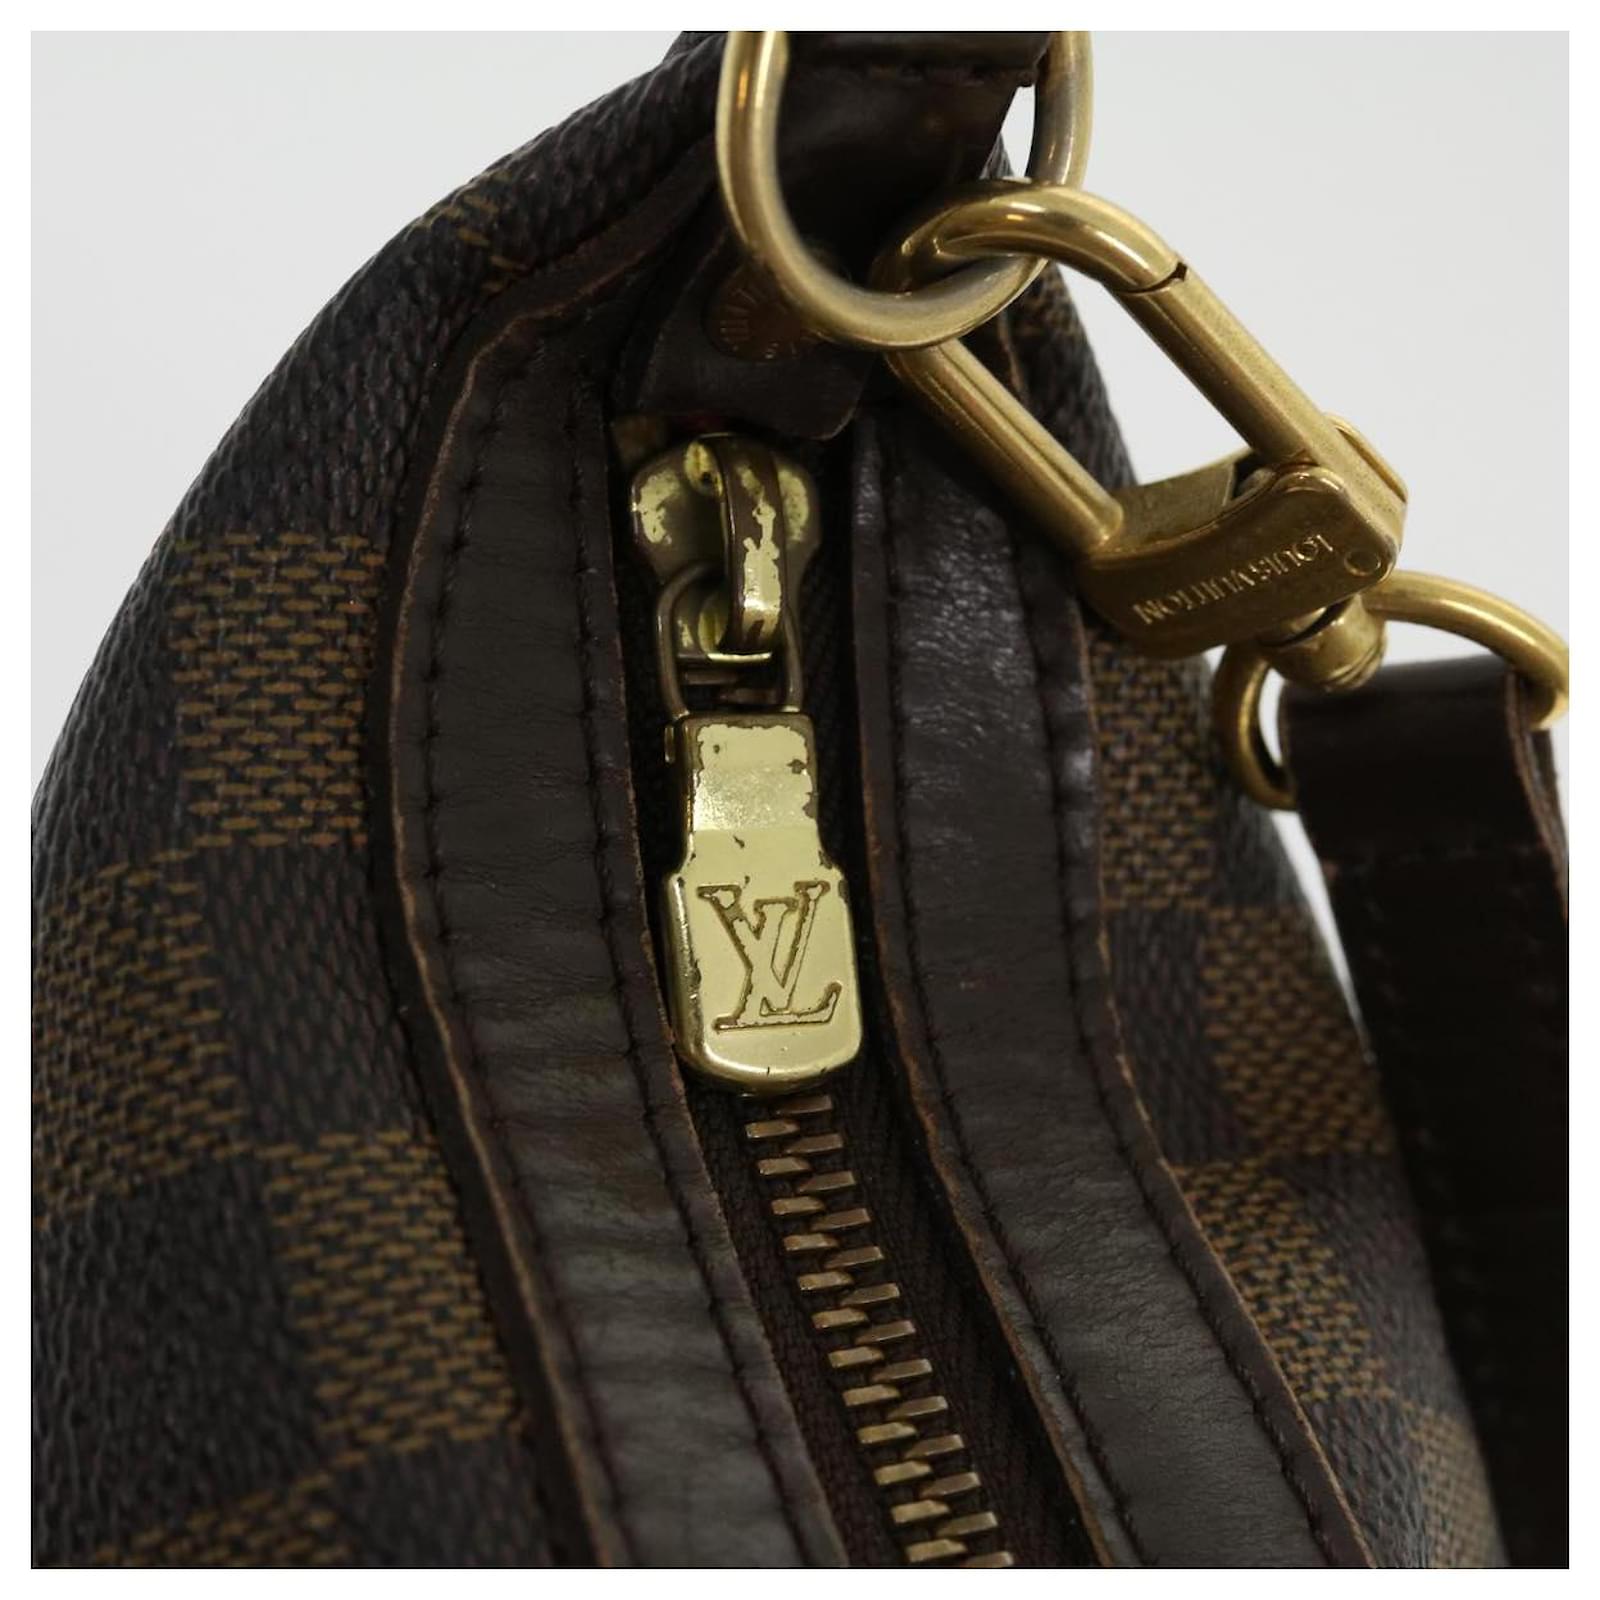 Louis Vuitton Illovo Pm N51996 Ebene Damier Du0065 Shoulder Bag